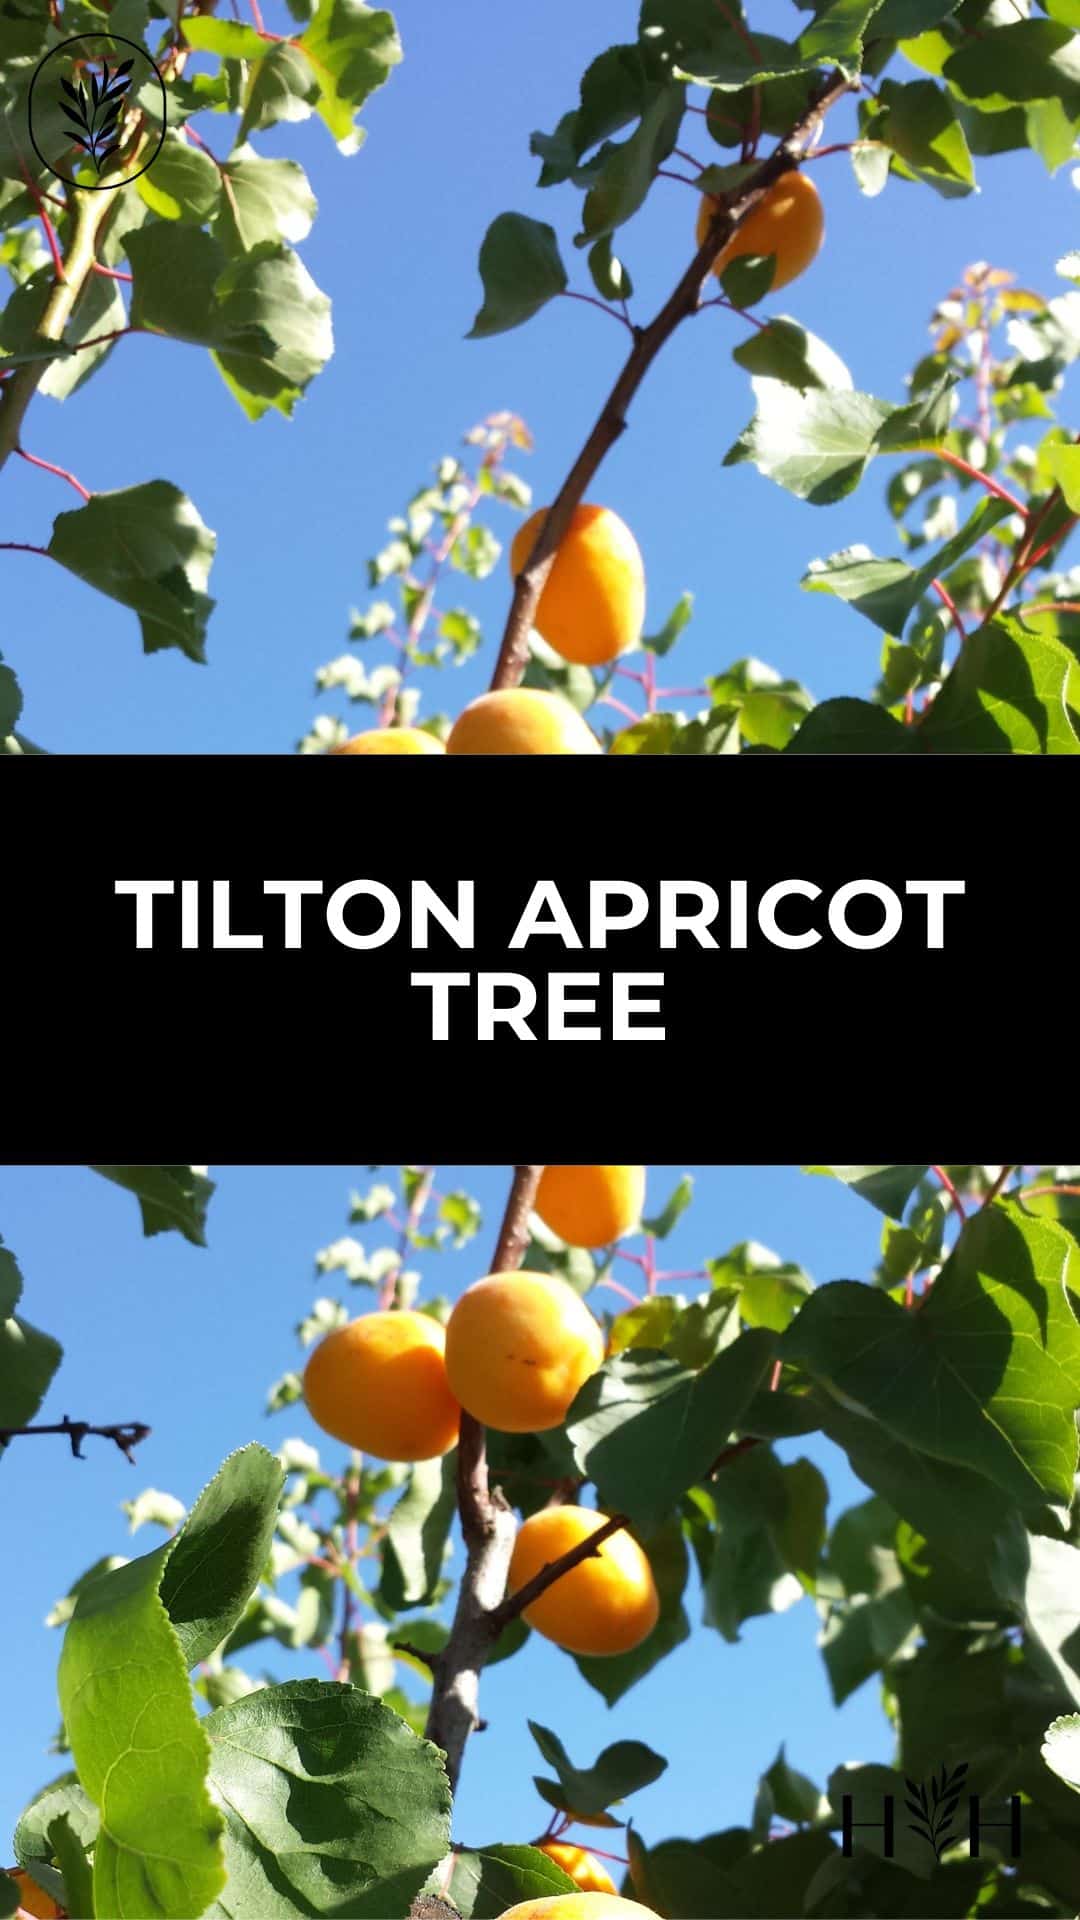 Tilton apricot tree via @home4theharvest